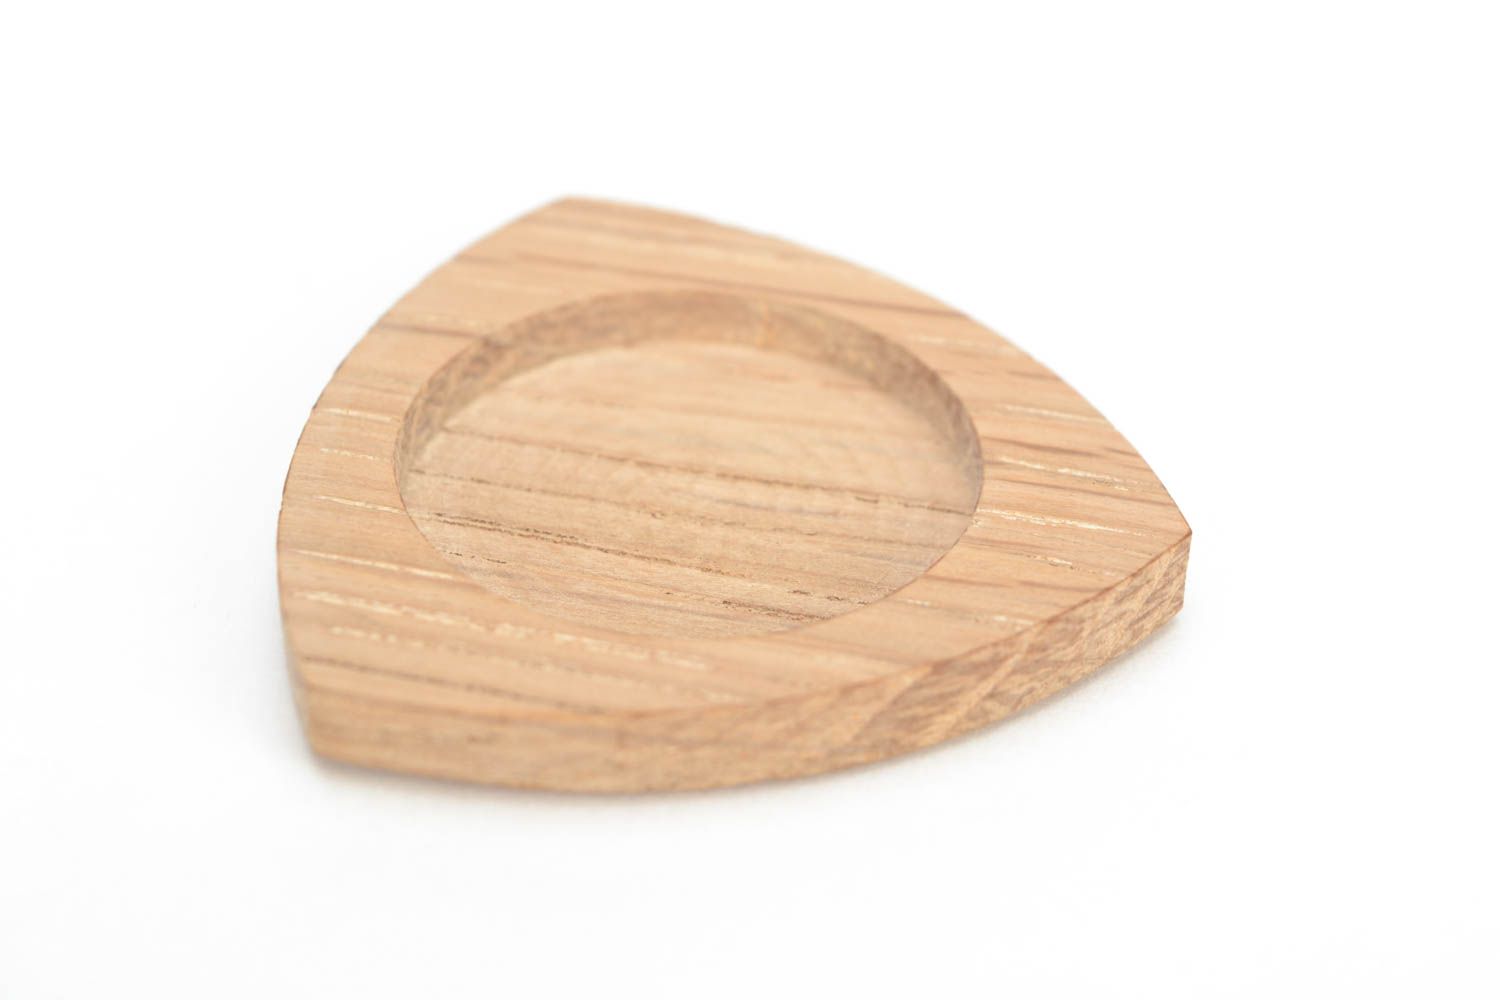 Fourniture pour broche en bois naturel à fabriquer originale faite main photo 2